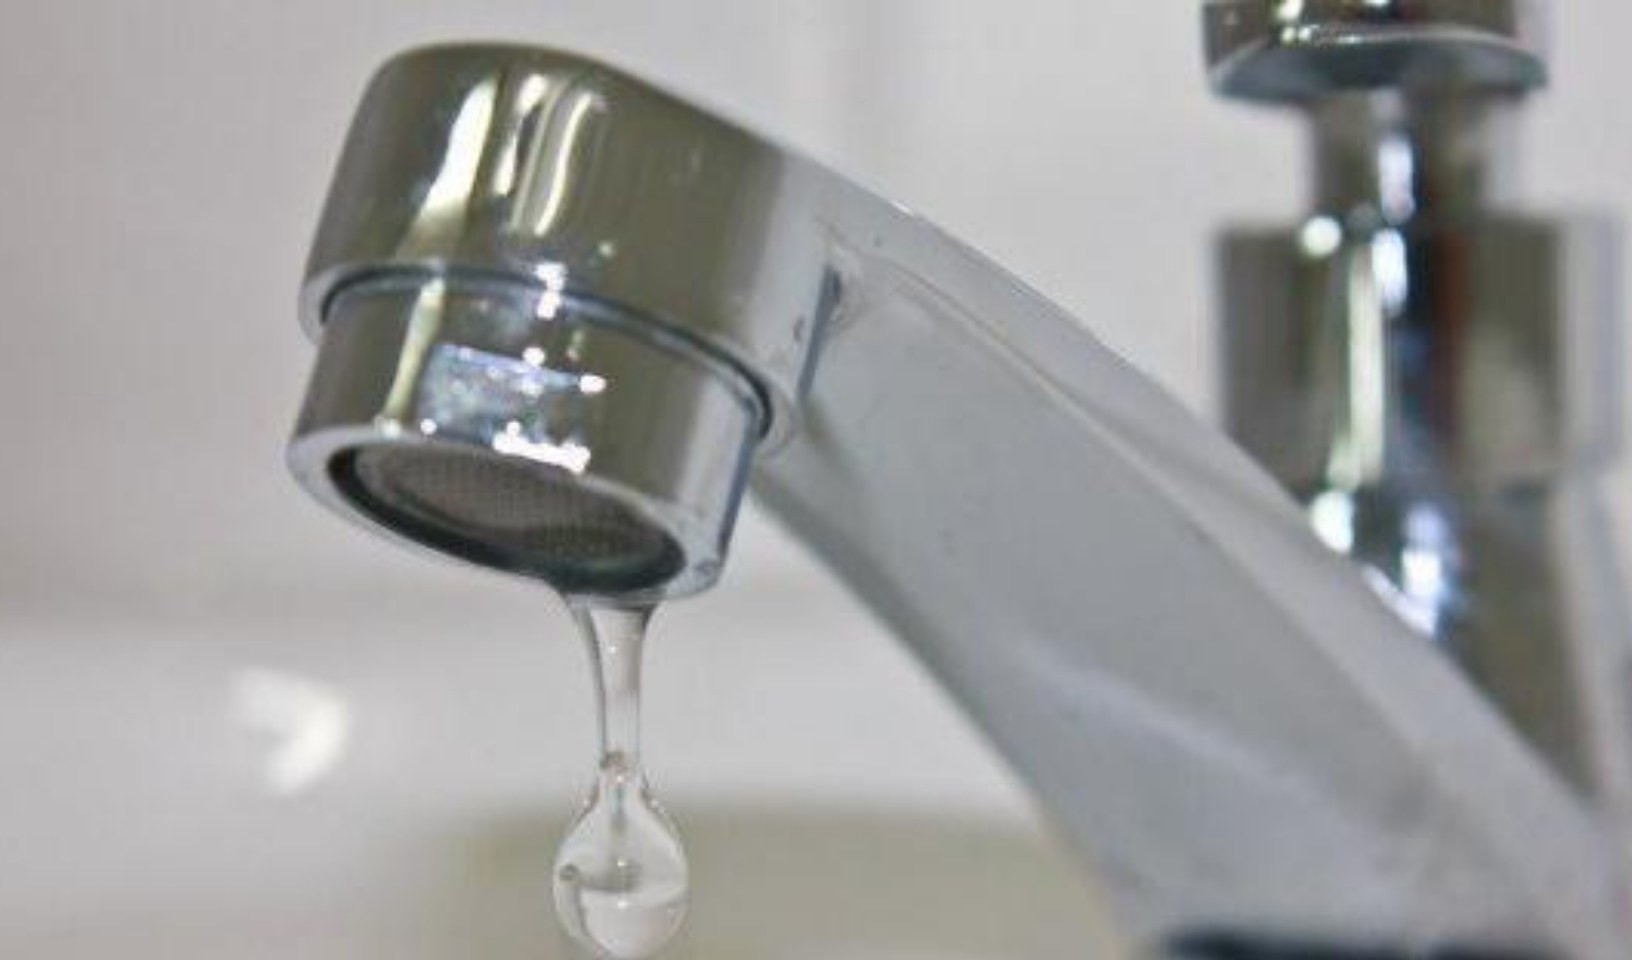 Emergenza idrica ad Alassio, emessa l'ordinanza per limitare l'uso di acqua potabile